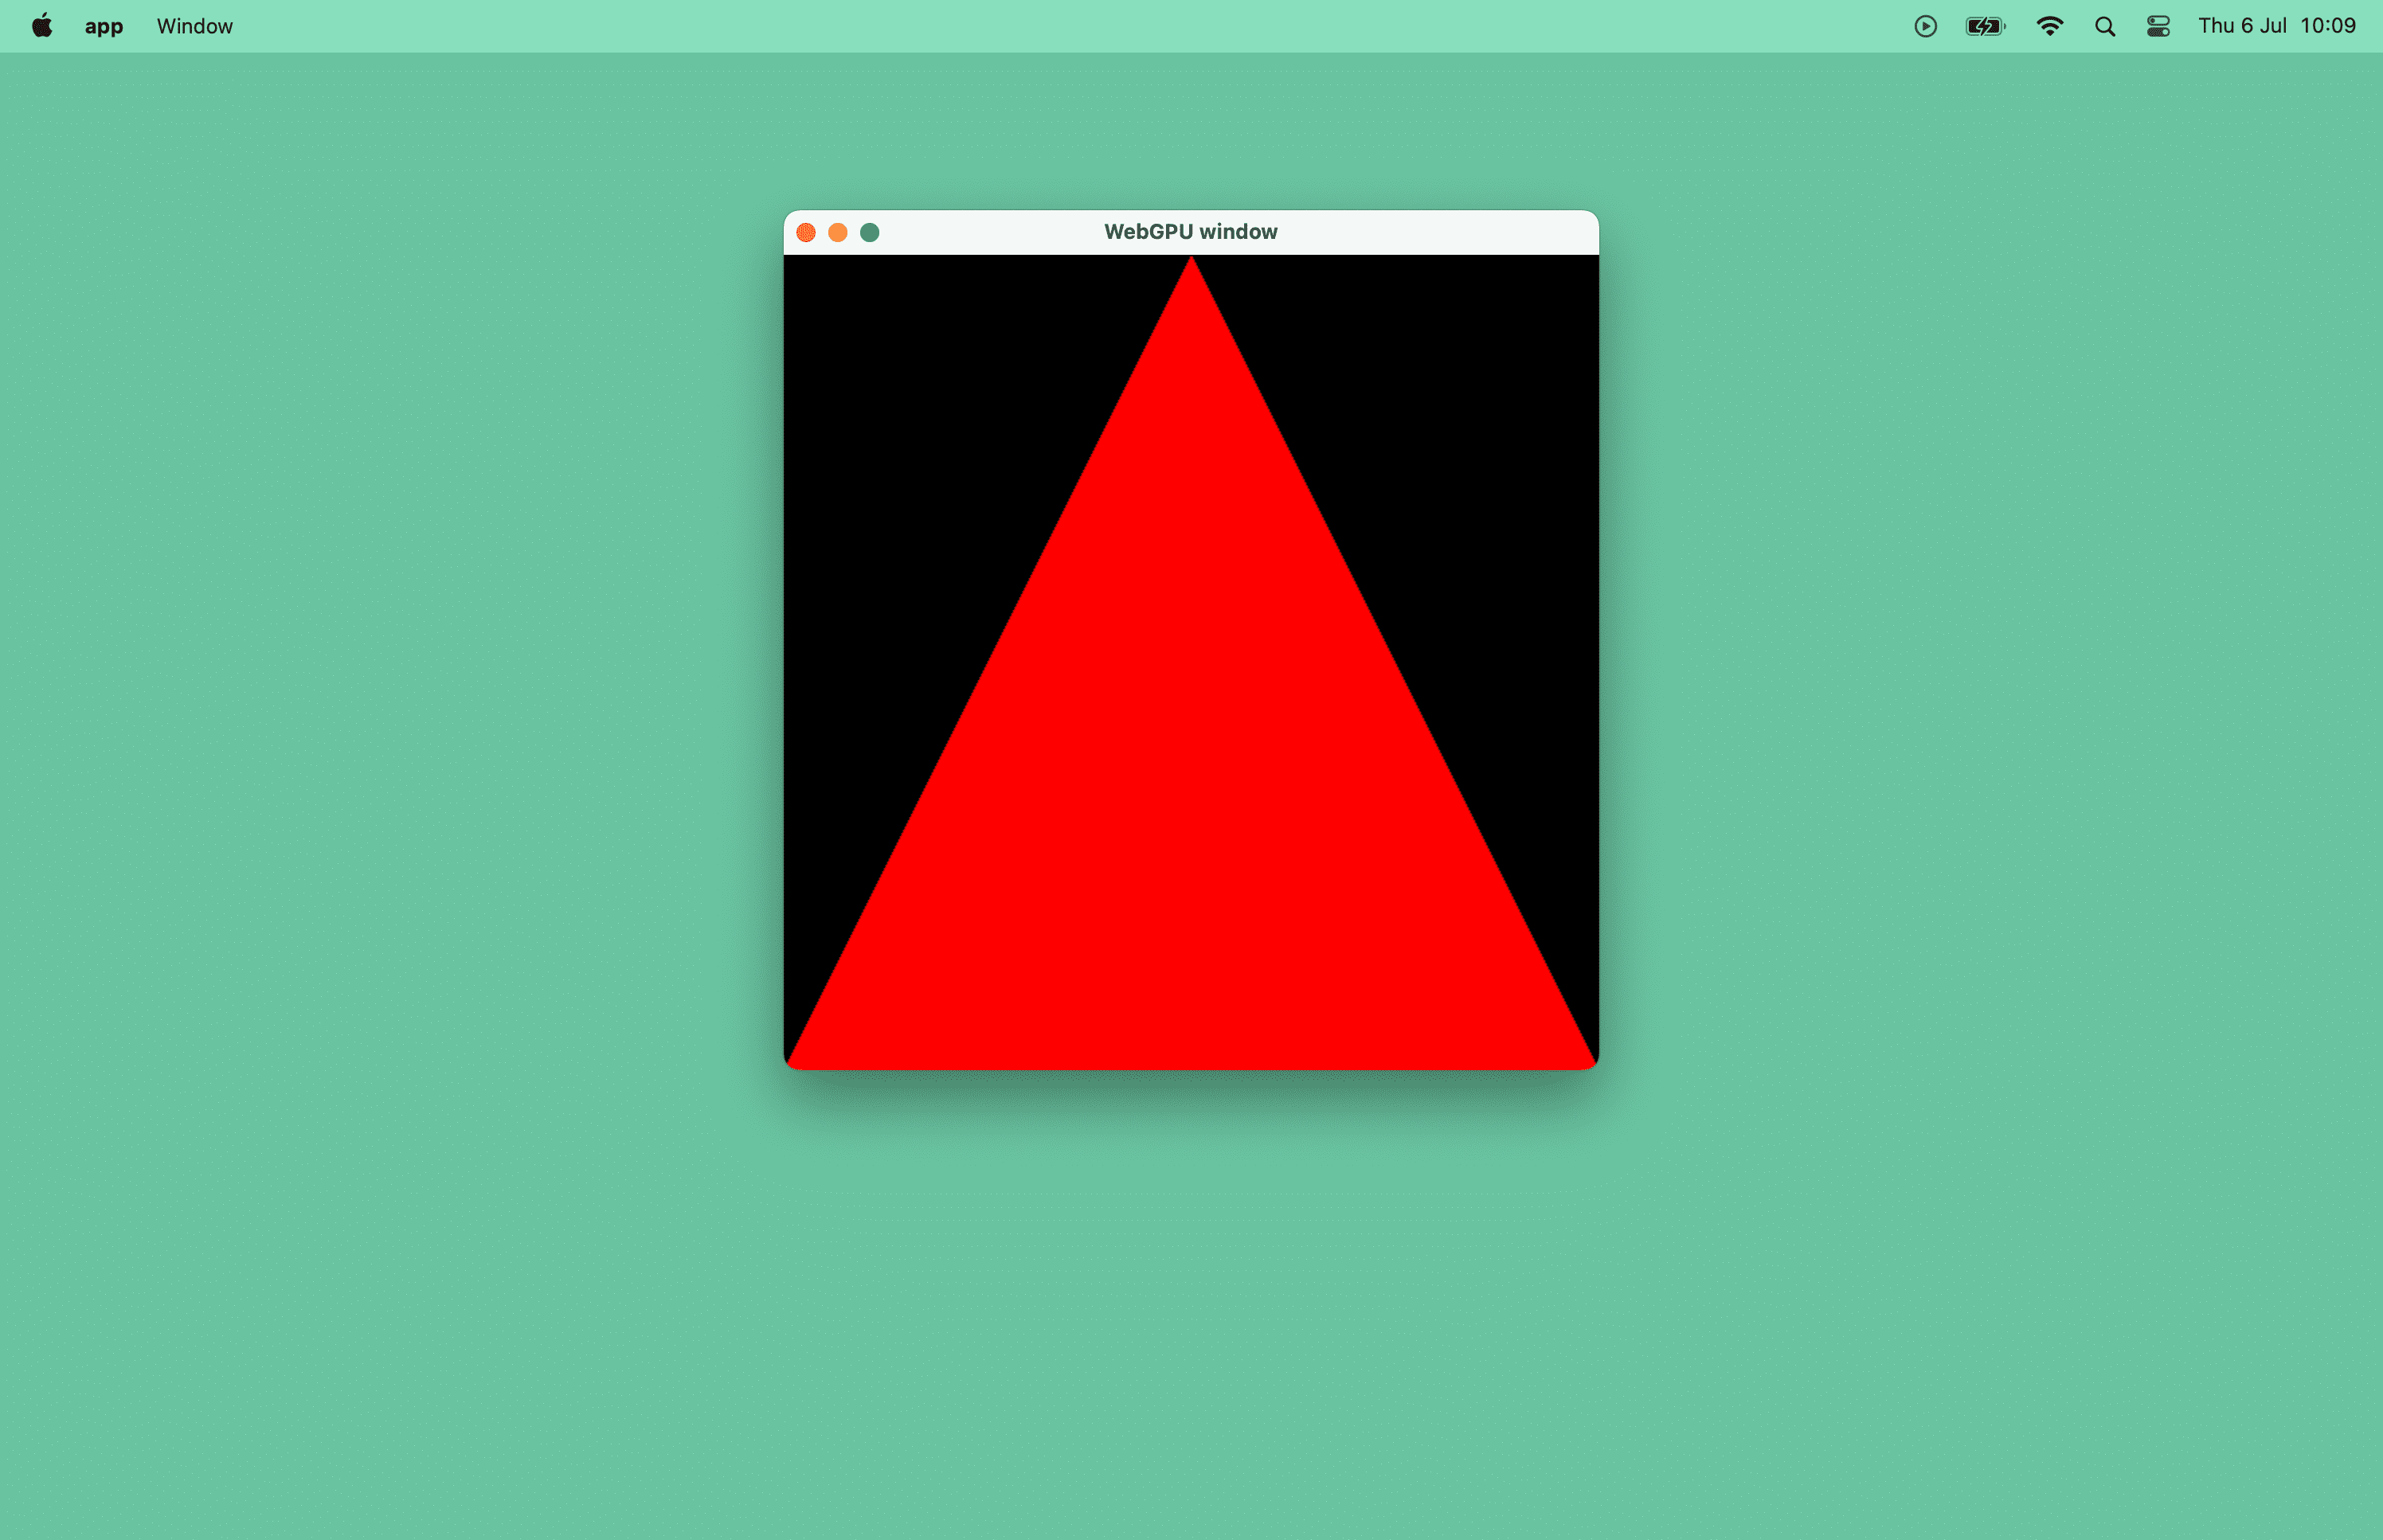 Zrzut ekranu z czerwonym trójkątem w oknie macOS.